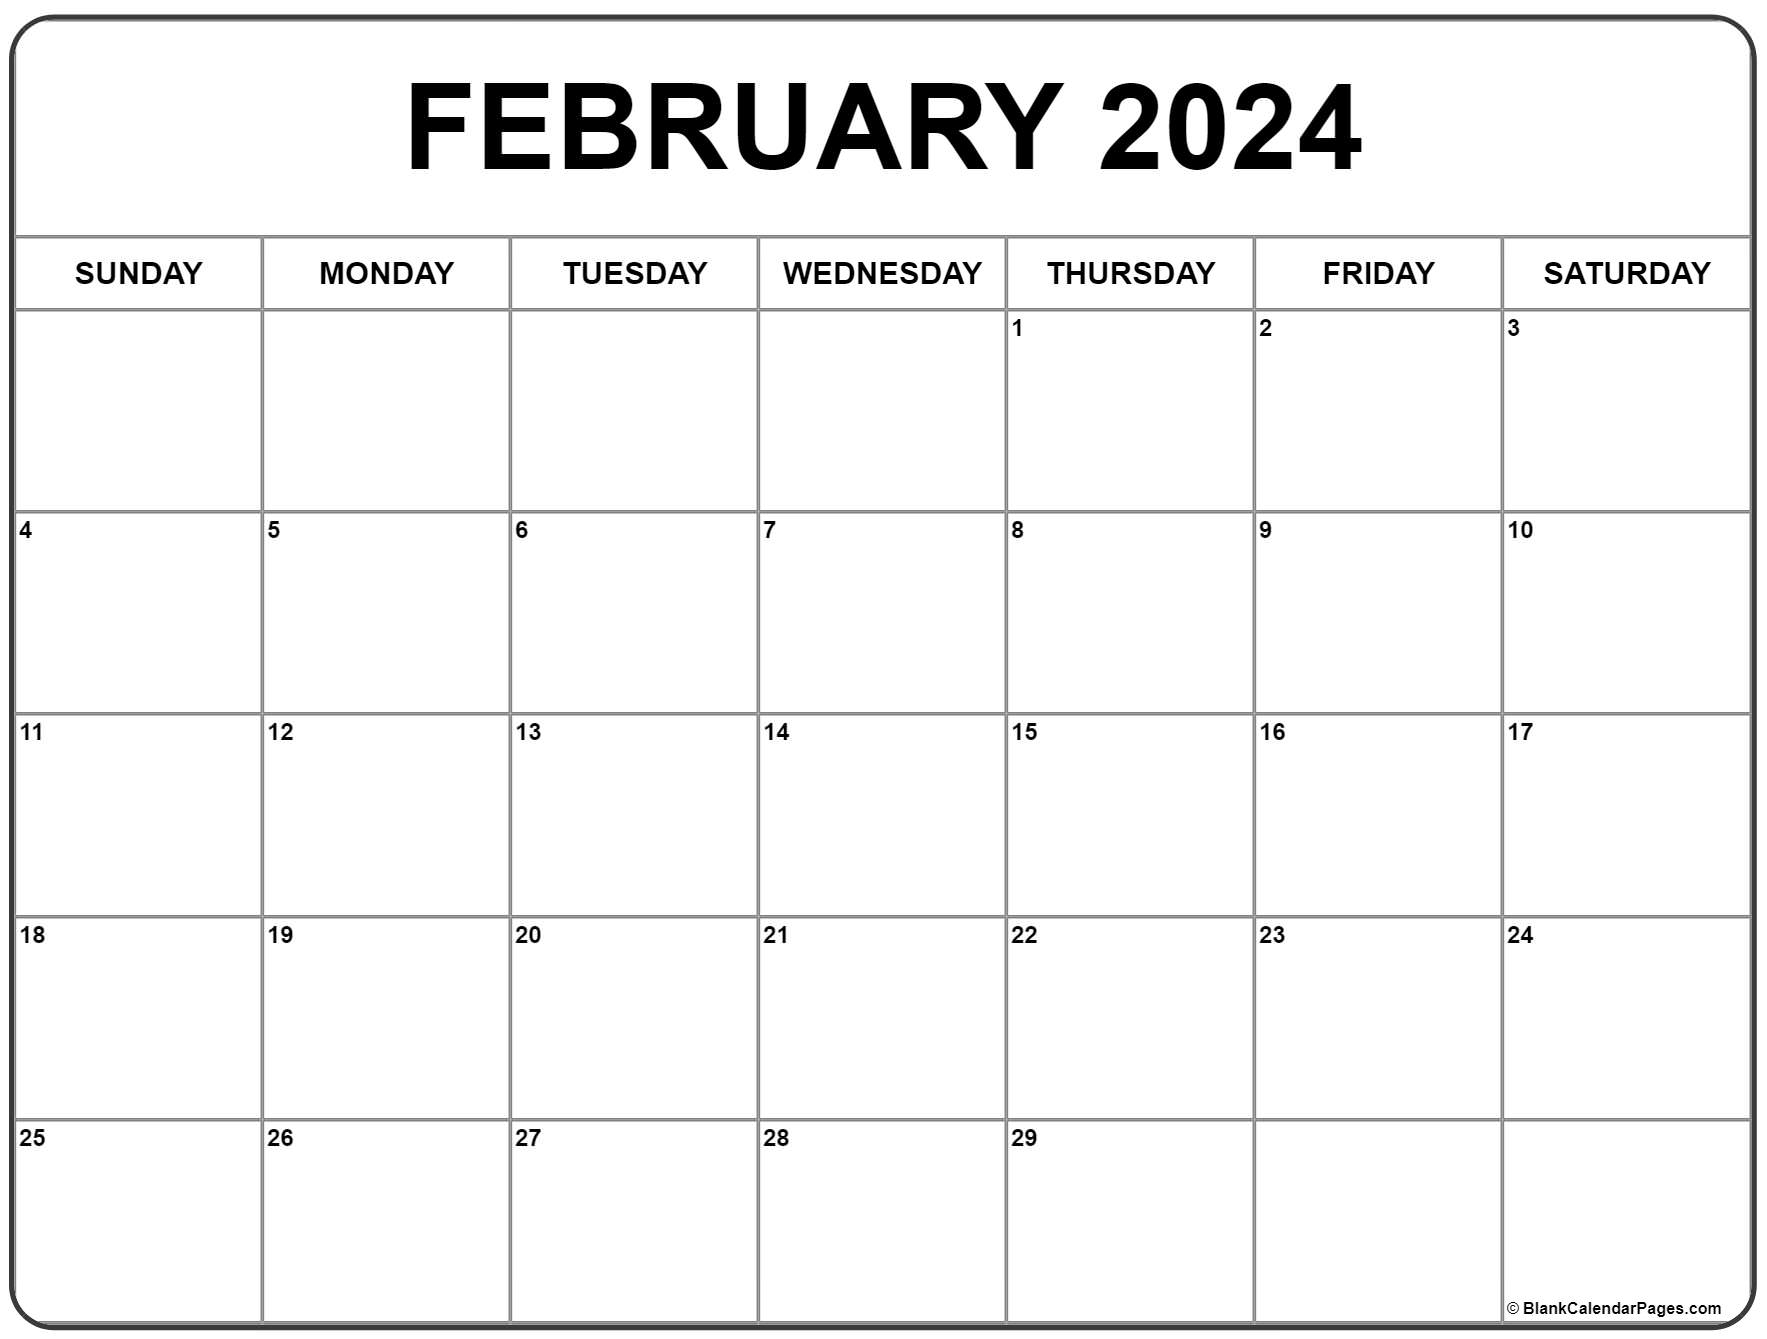 February 2024 Calendar | Free Printable Calendar for February 2024 Calendar Free Printable